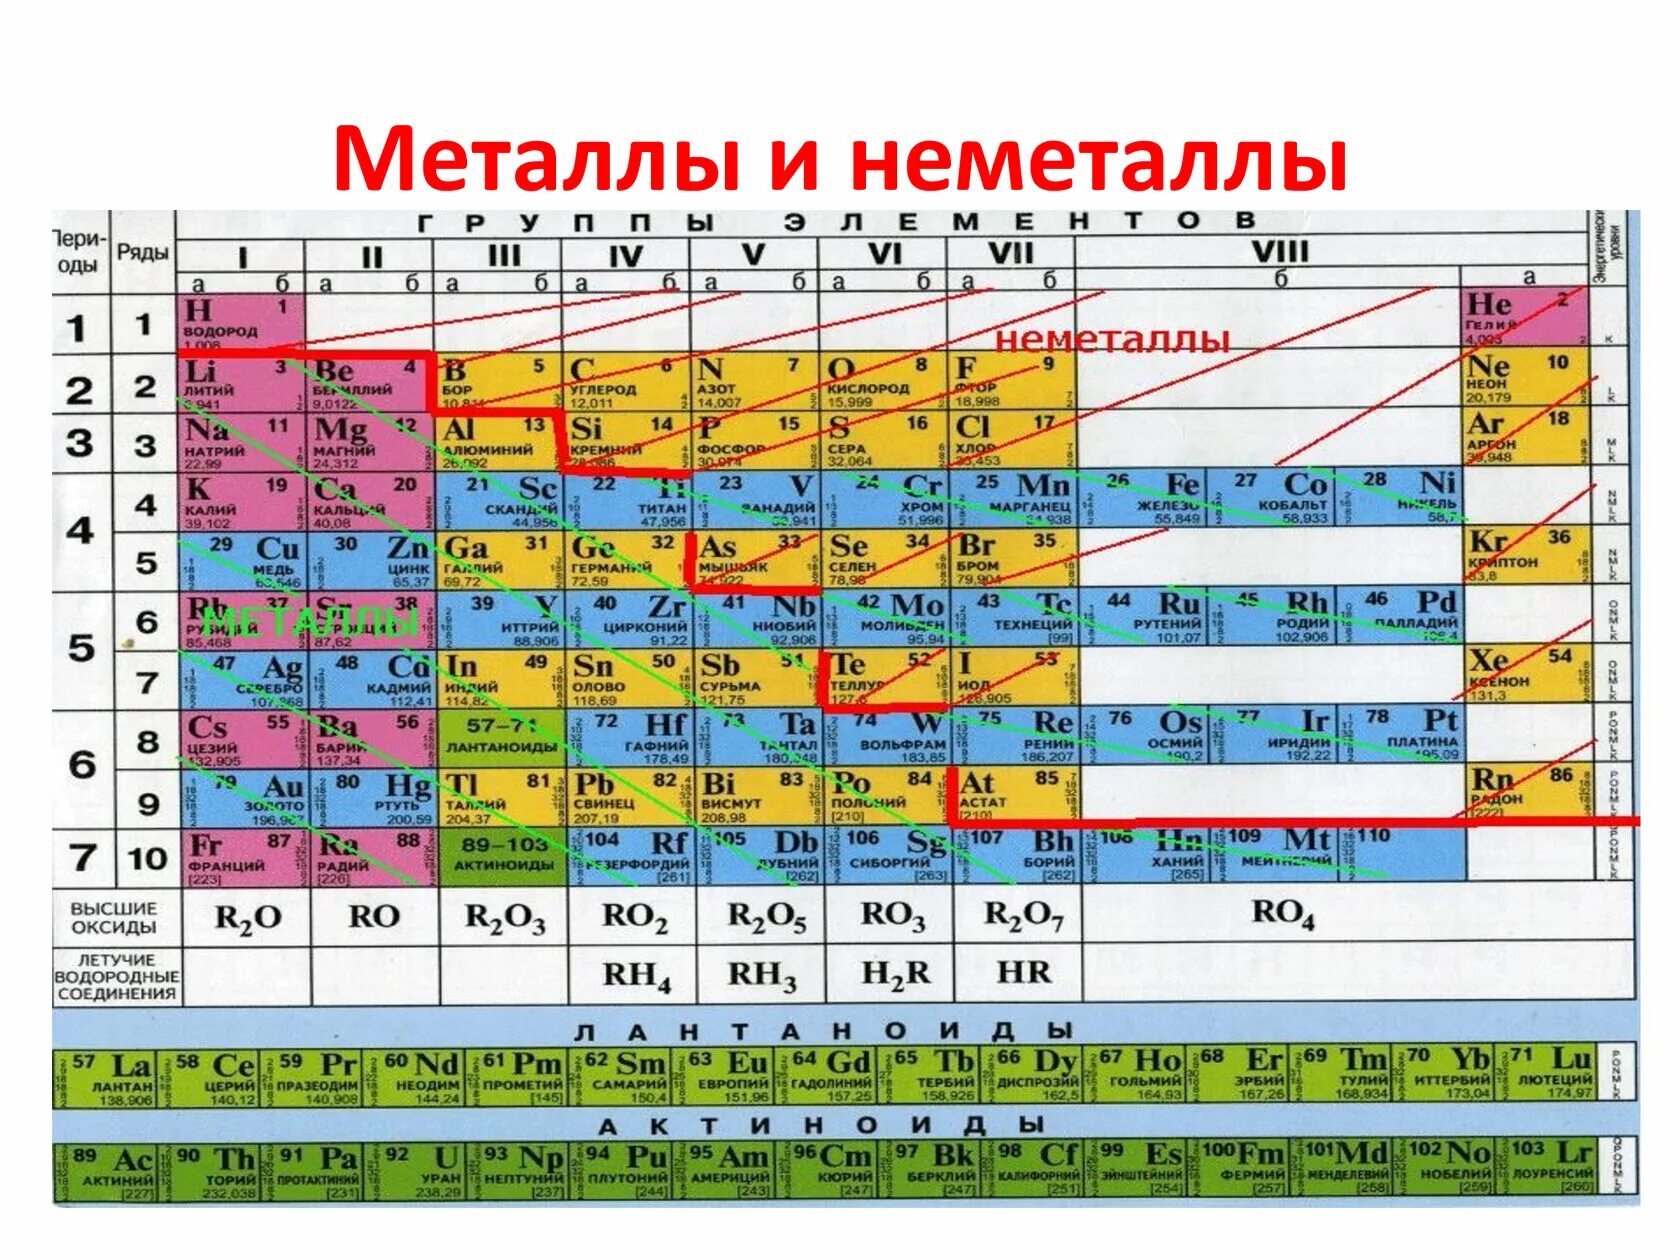 Таблица Менделеева металлы и неметаллы. Химия металлы и неметаллы таблица. Химические элементы металлы и неметаллы. Таблица элементов Менделеева металлы и неметаллы.